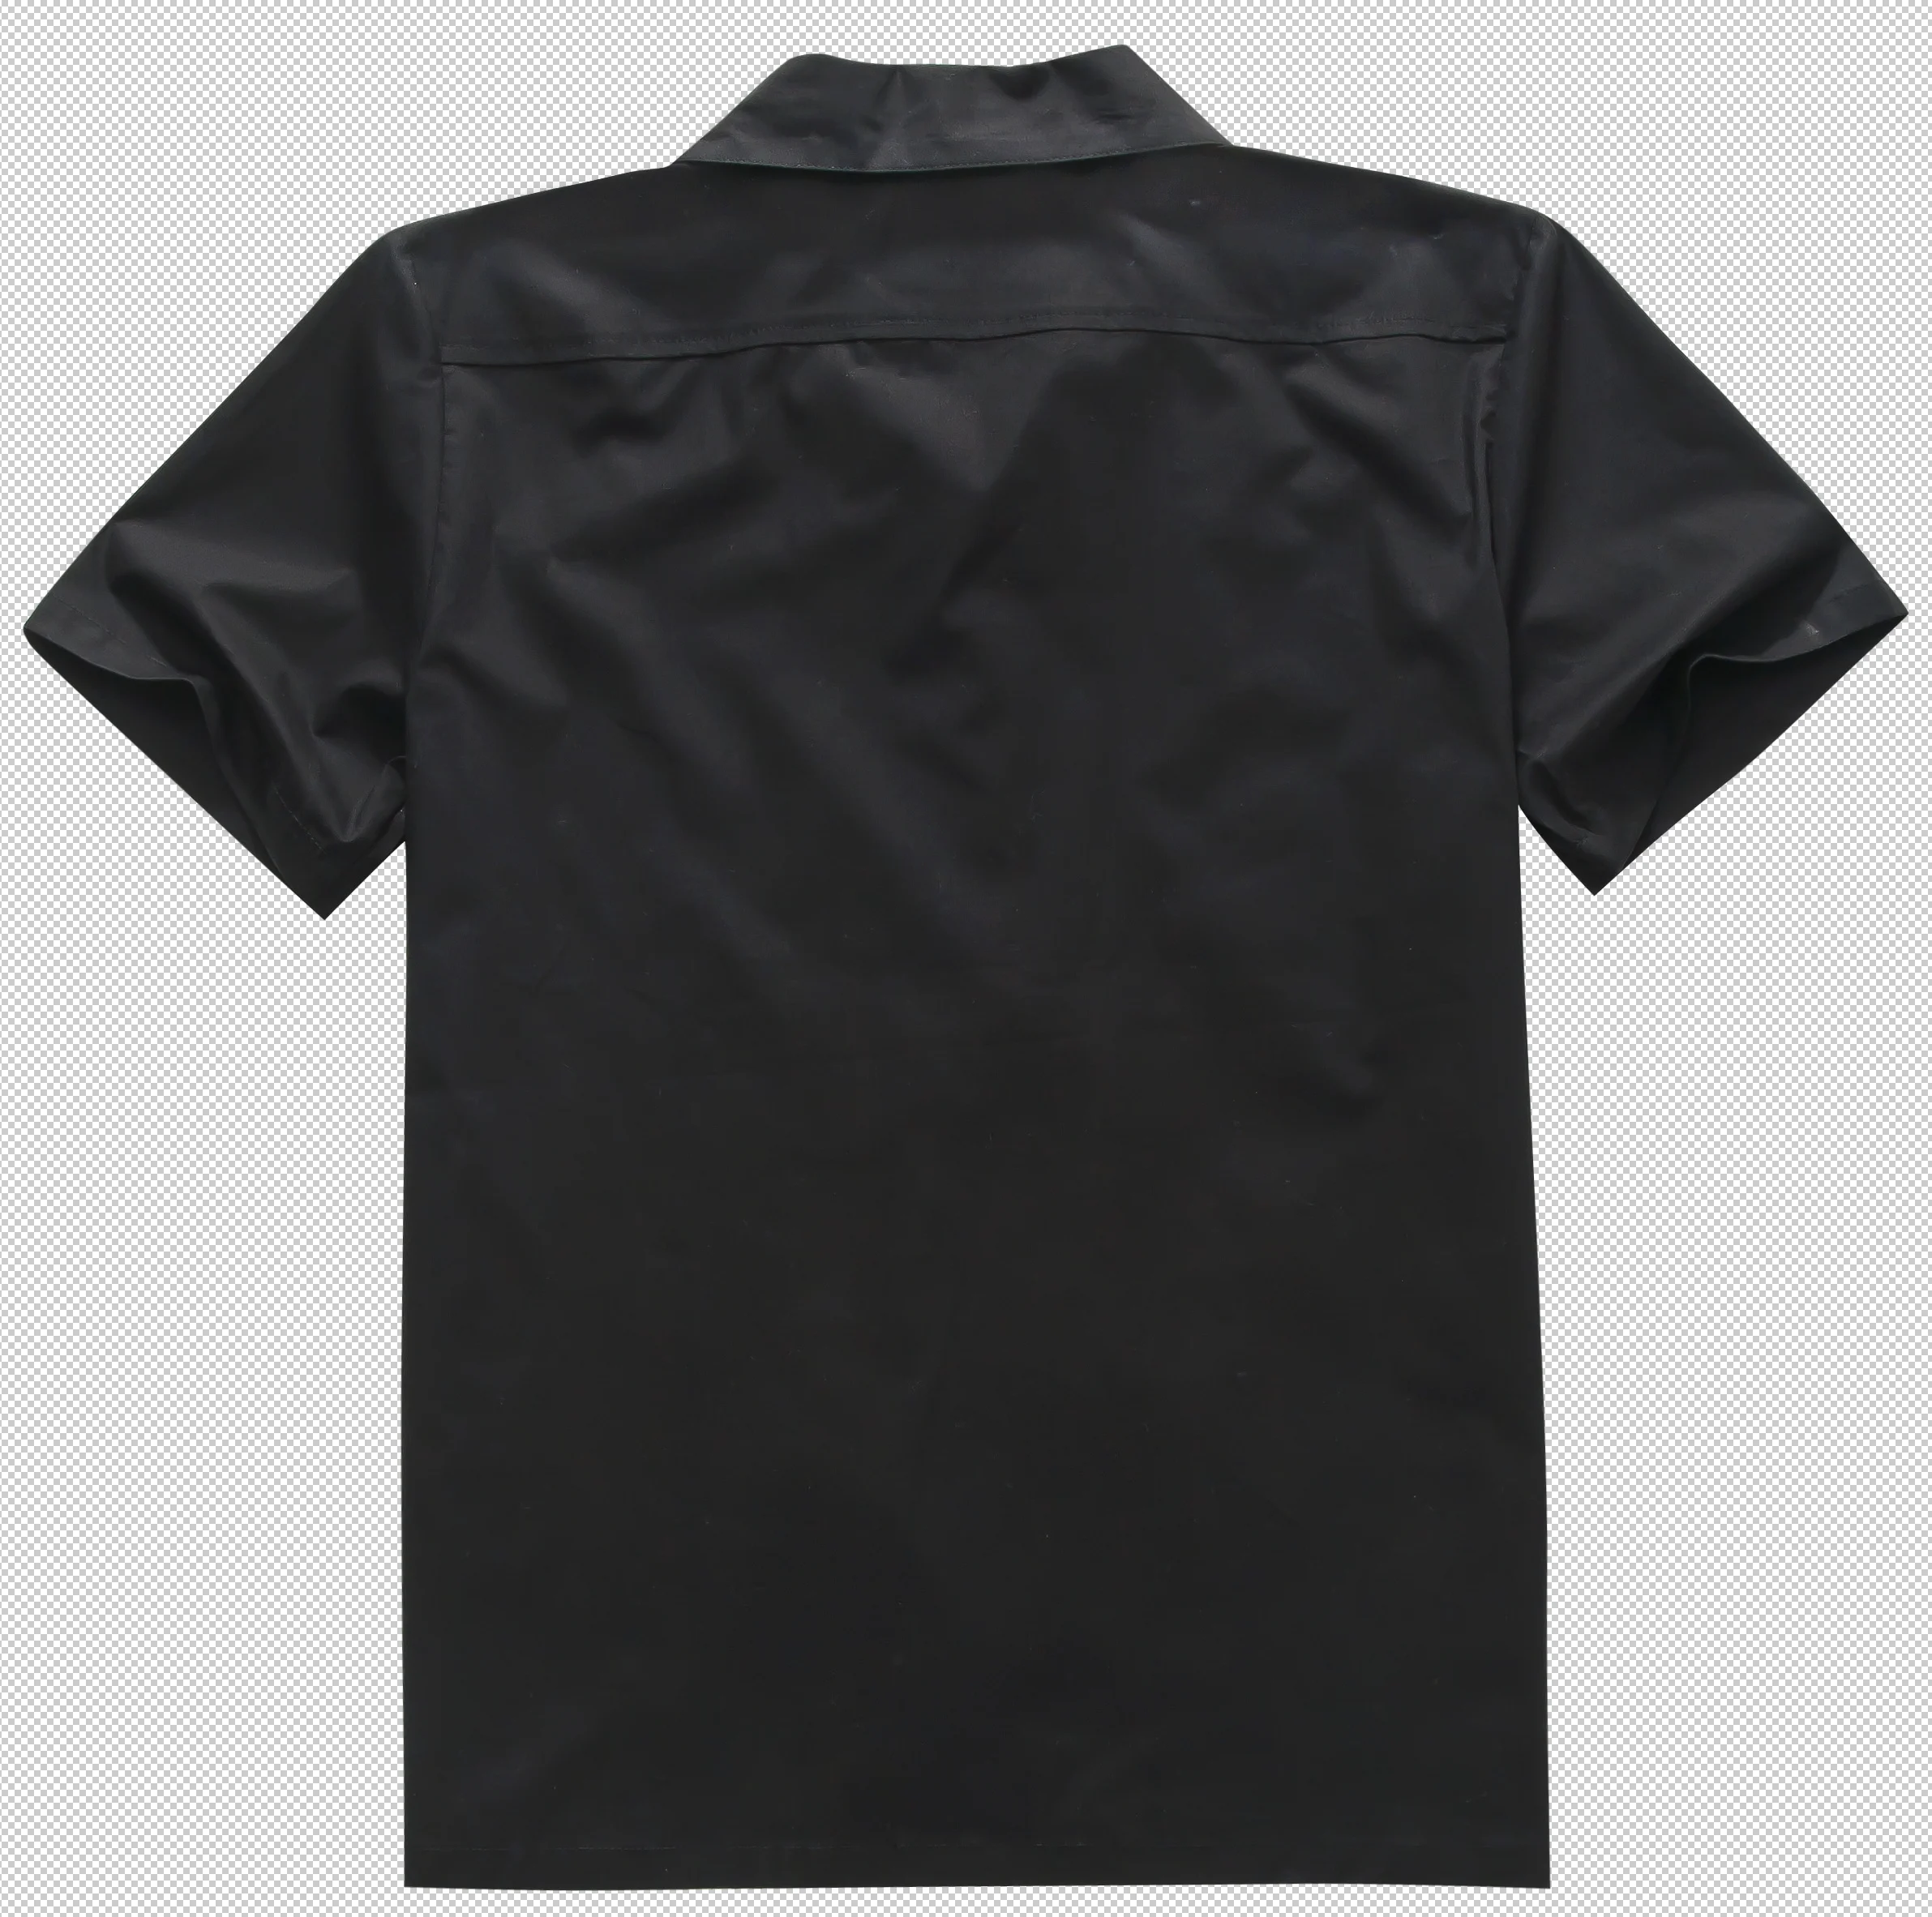 2019 Новое поступление мужской моды дизайн VacayHot печати хлопок рокабилли Винтаж 50 s клуб плюс размеры работы полотняные блузки